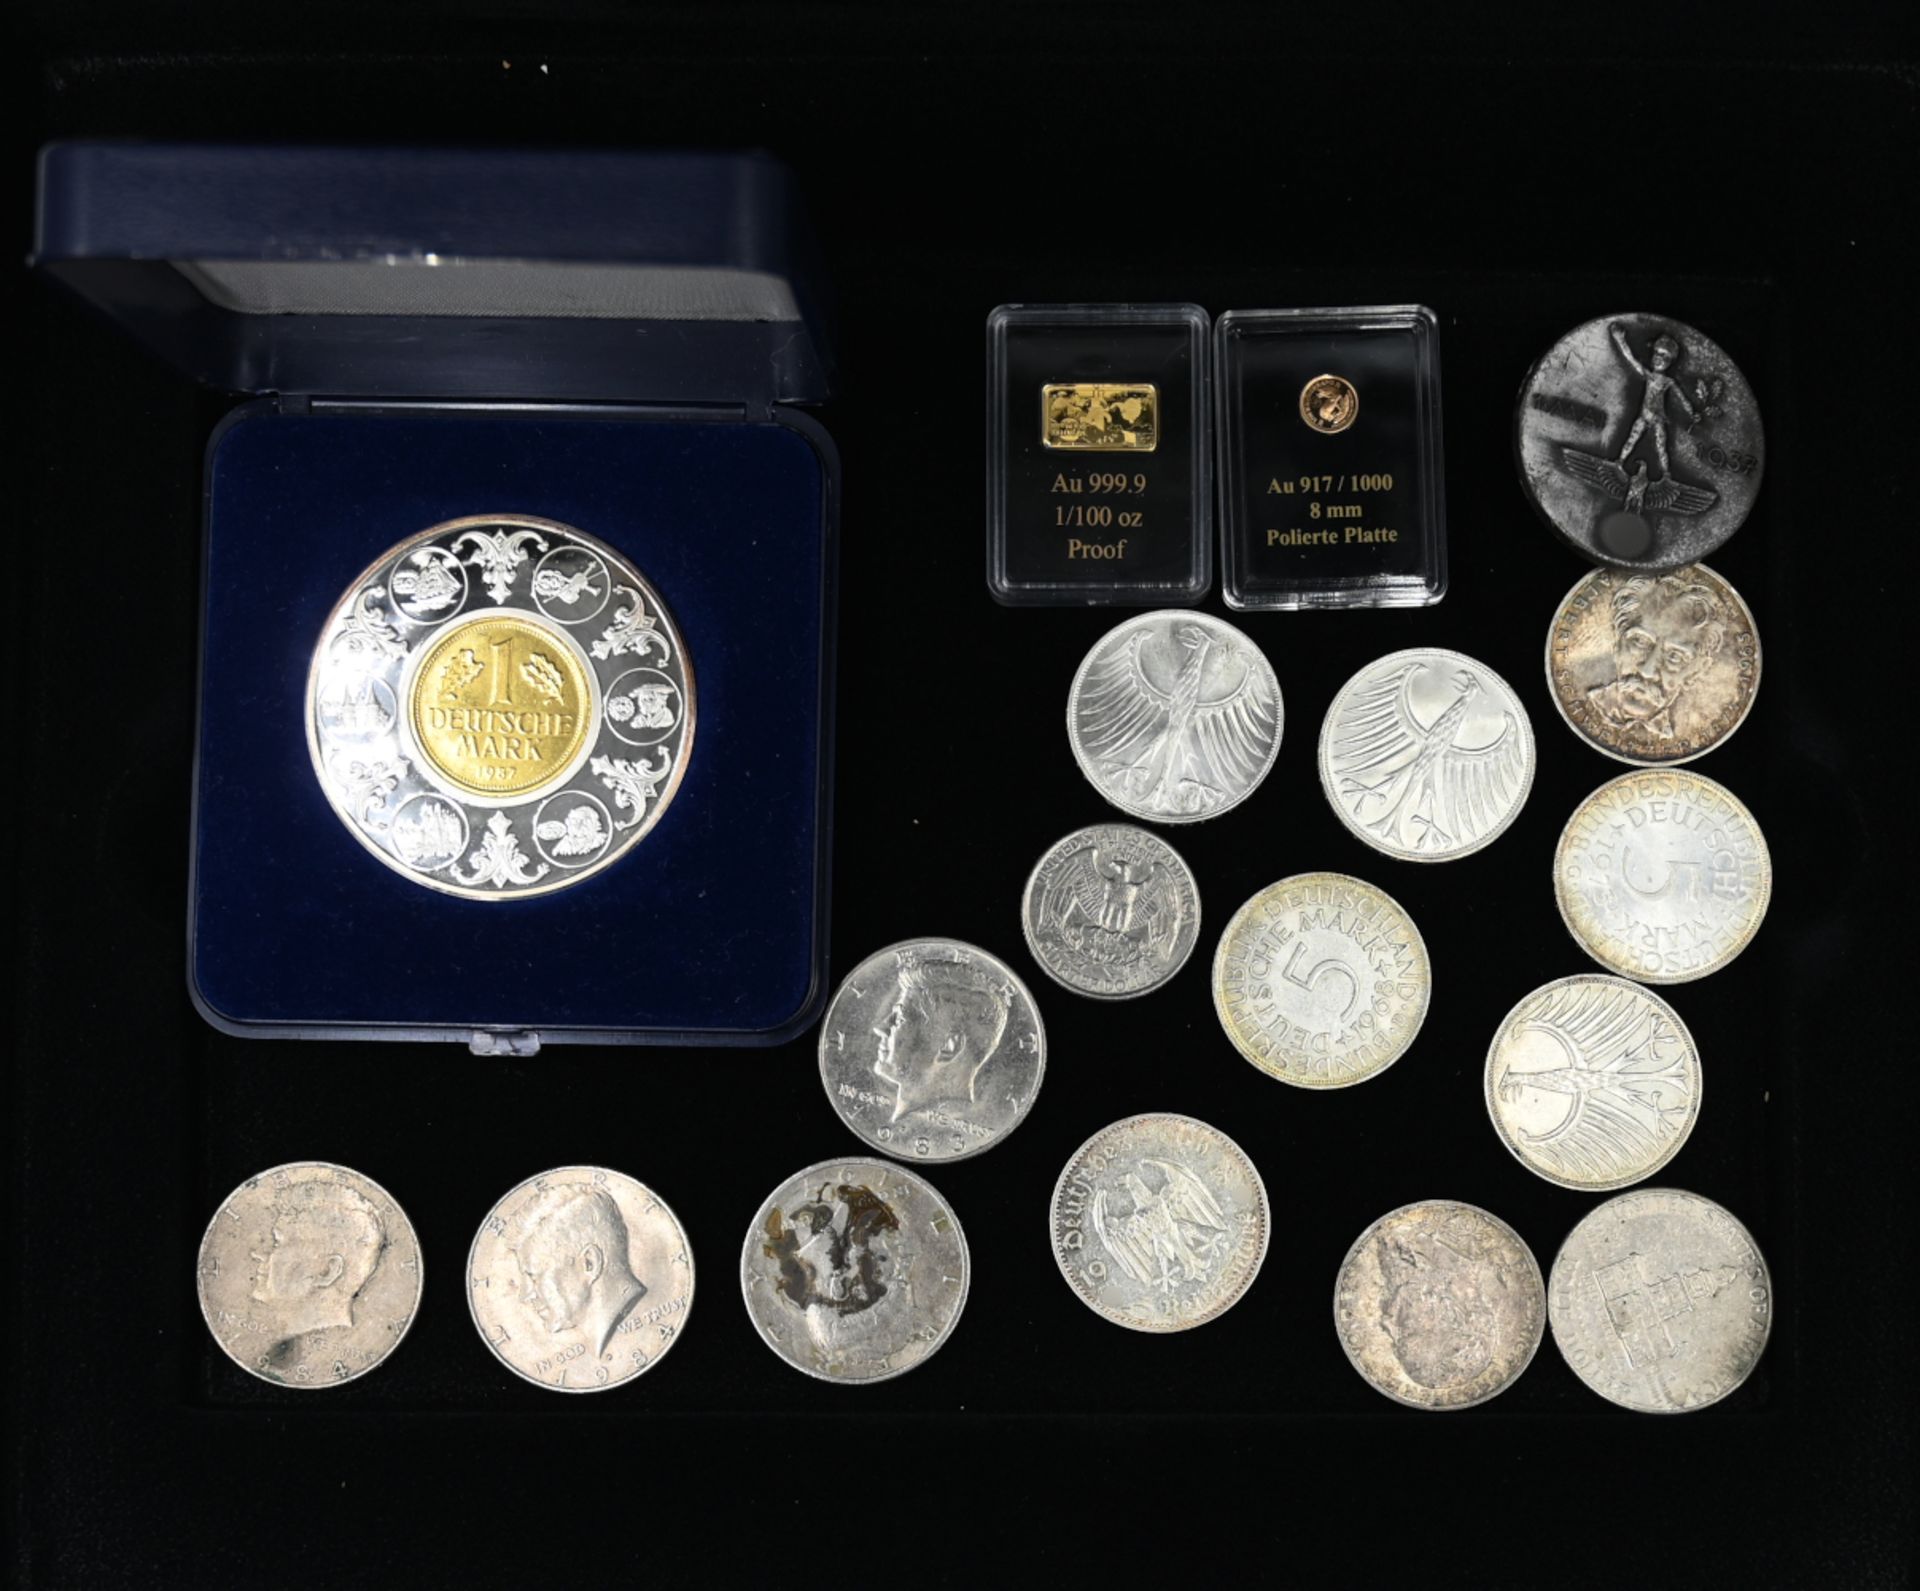 1 Konvolut Münzen/Medaillen u.a.: min. GG, Silber, Metall, BRD 5DM, USA, 1 Anstecker II.WK (§§86/86a